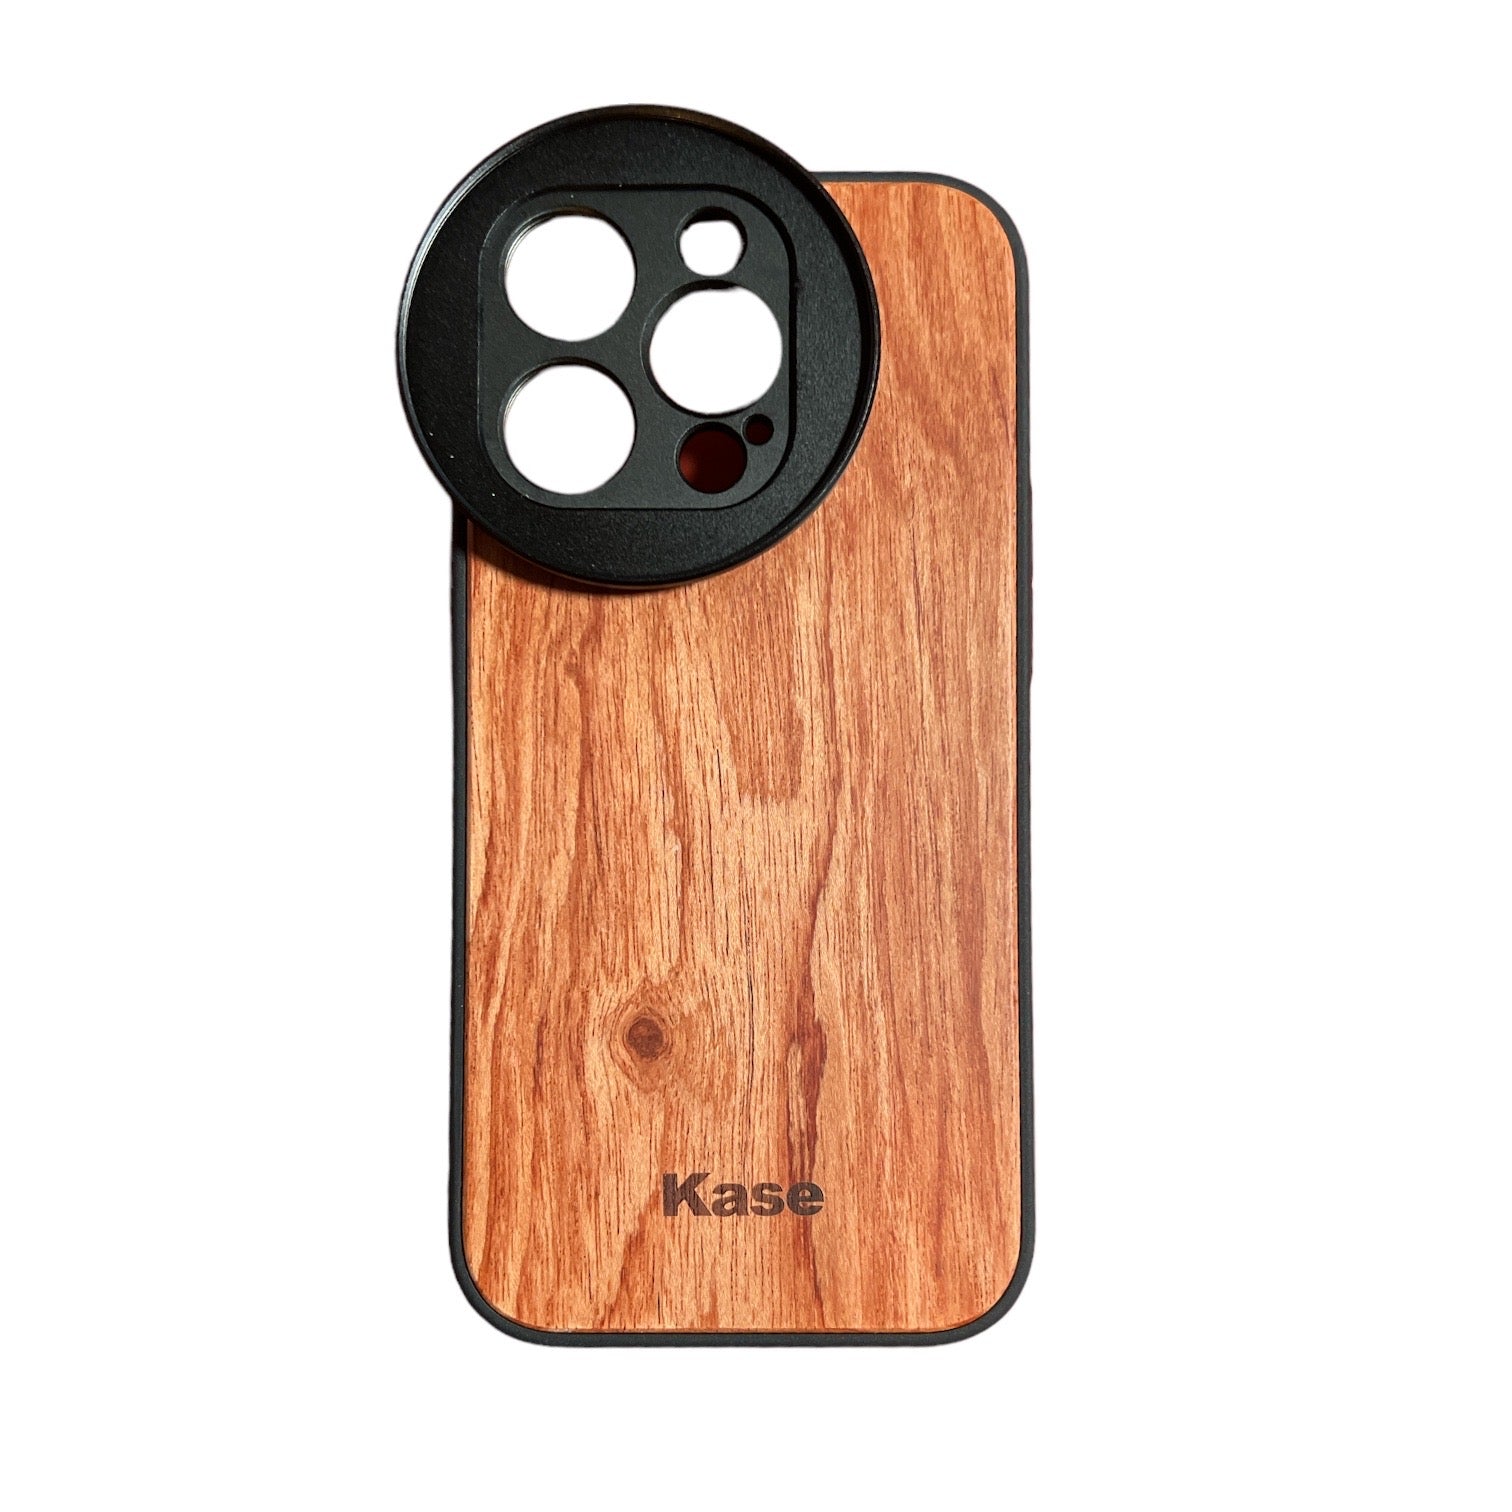 Kase Lens Holder Case